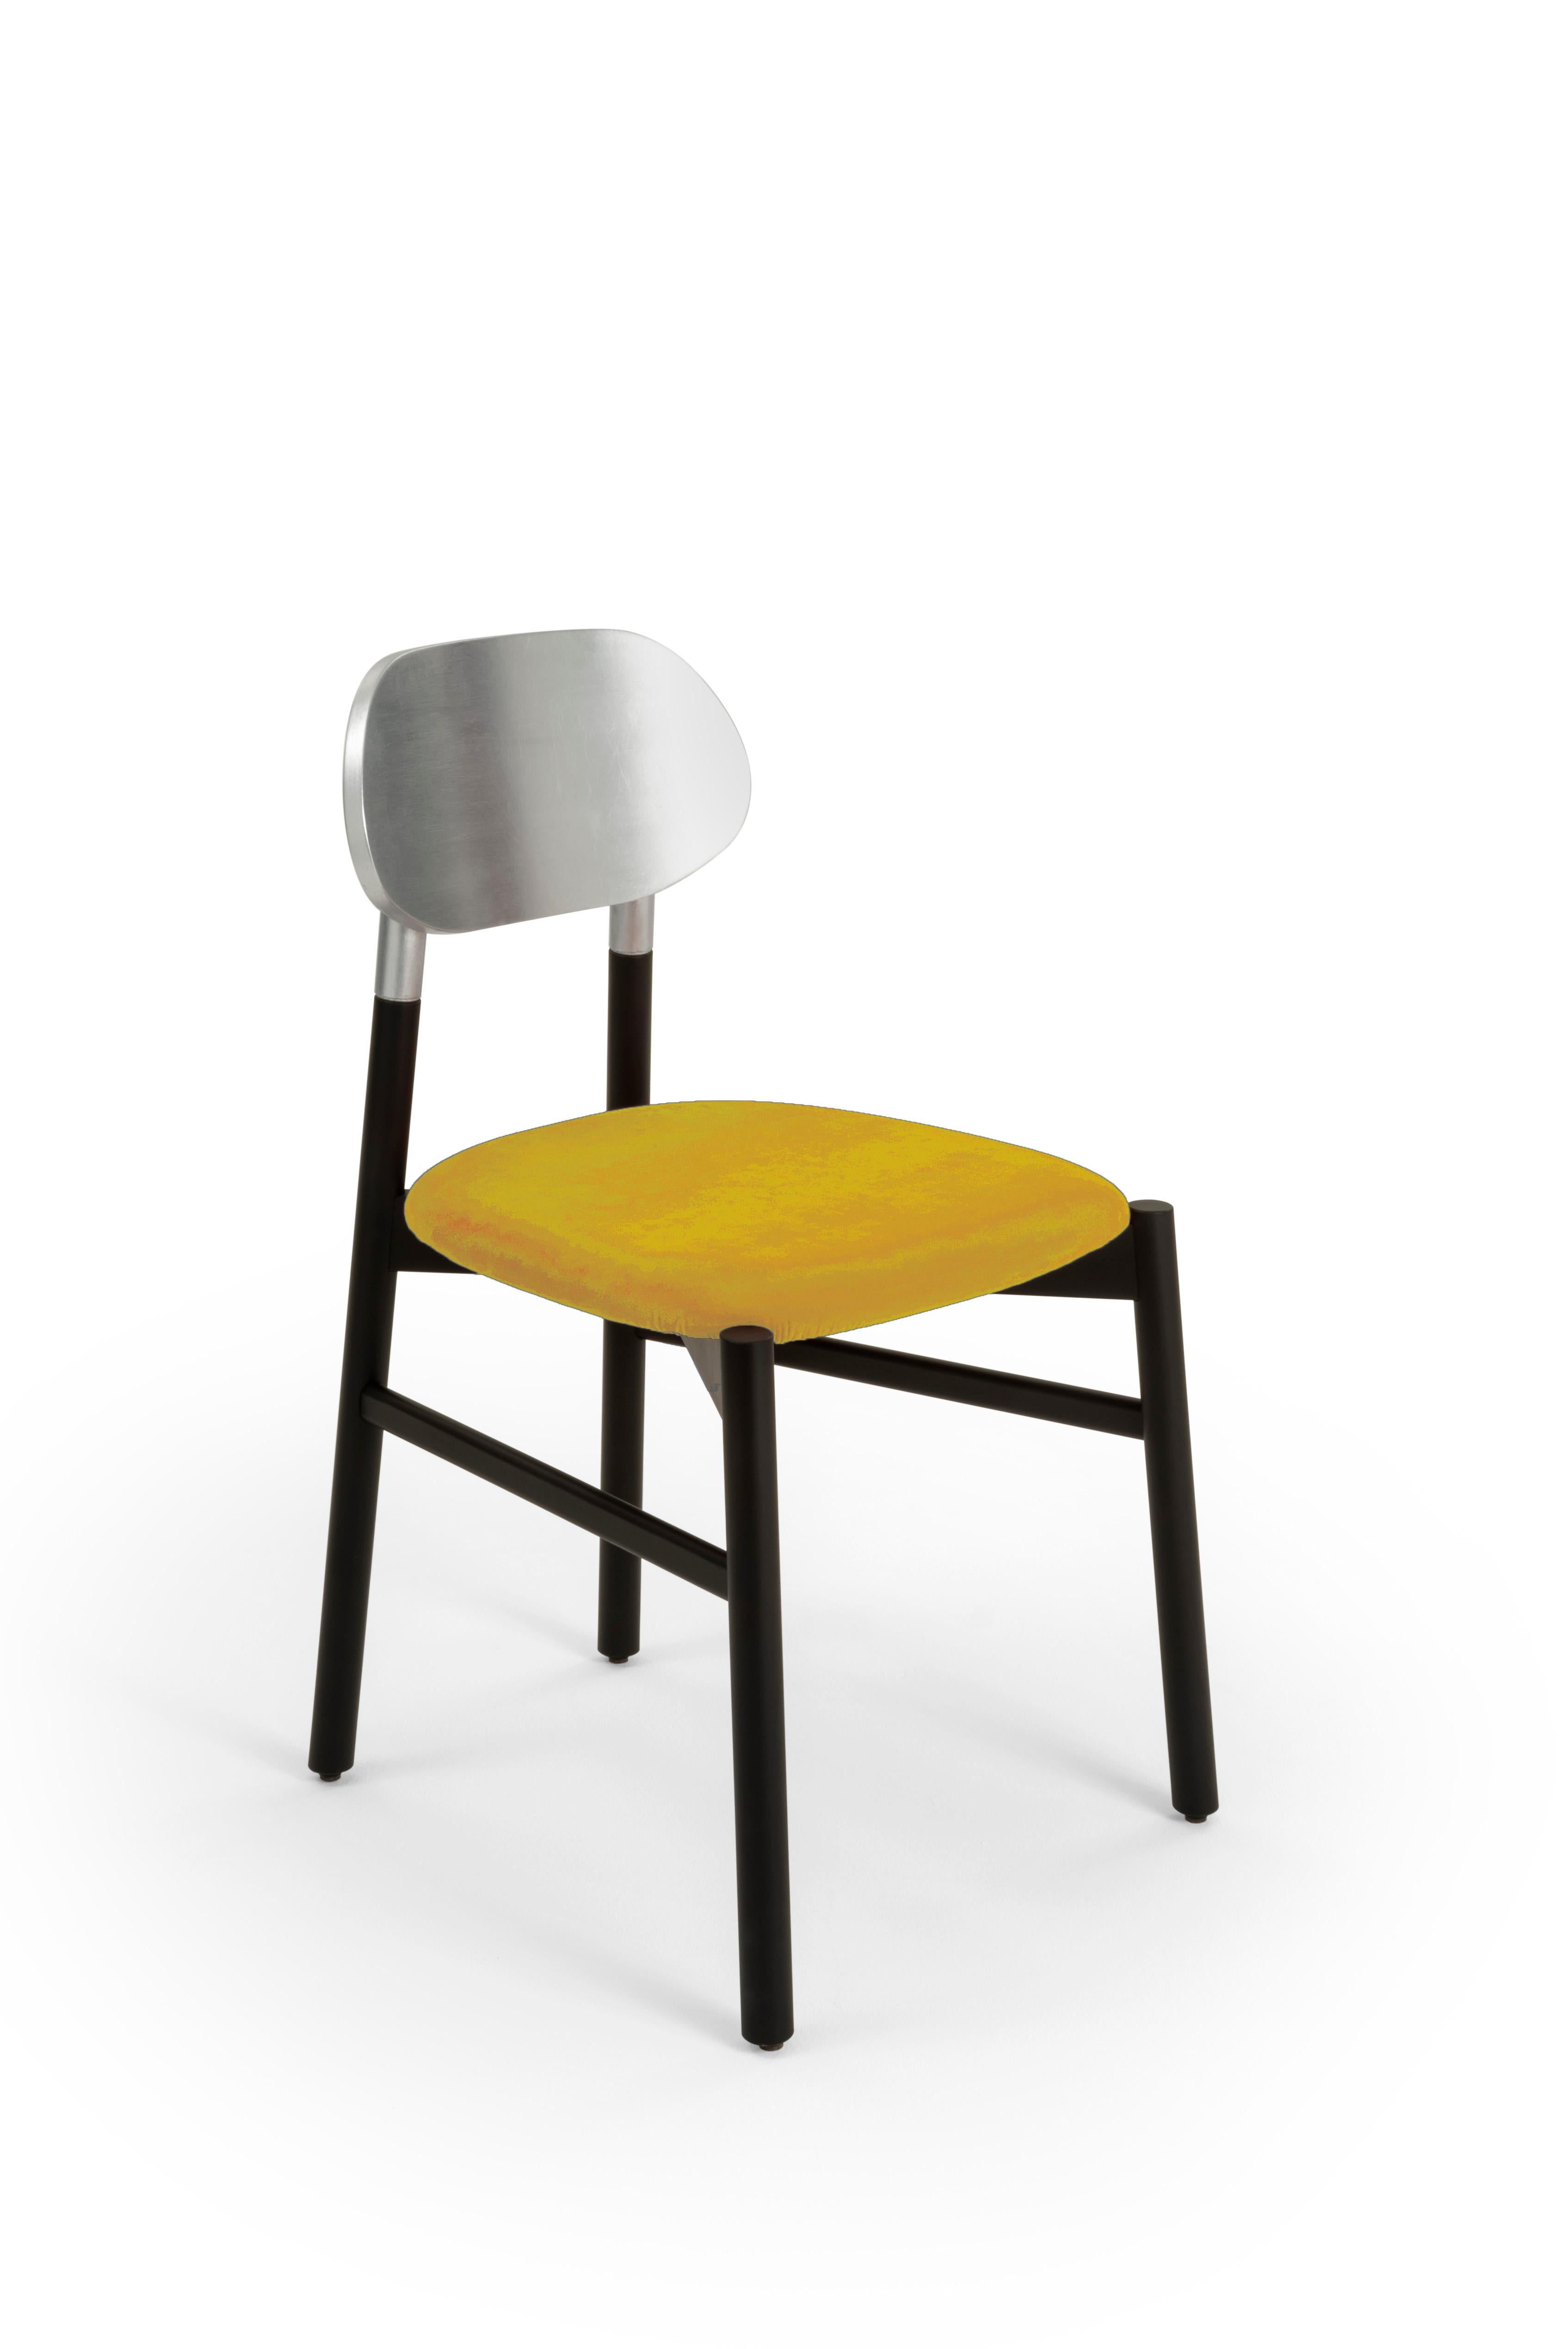 Gepolsterter Stuhl Bokken aus schwarz gebeiztem Buchenholz, Rückenlehne mit Blattsilber und gepolstertem Sitz, bezogen mit hochwertigem Rubelli-Samt. Italienische Qualität pur!
Ein essentieller Stuhl in der Form, aber kostbar in den Farben. Die